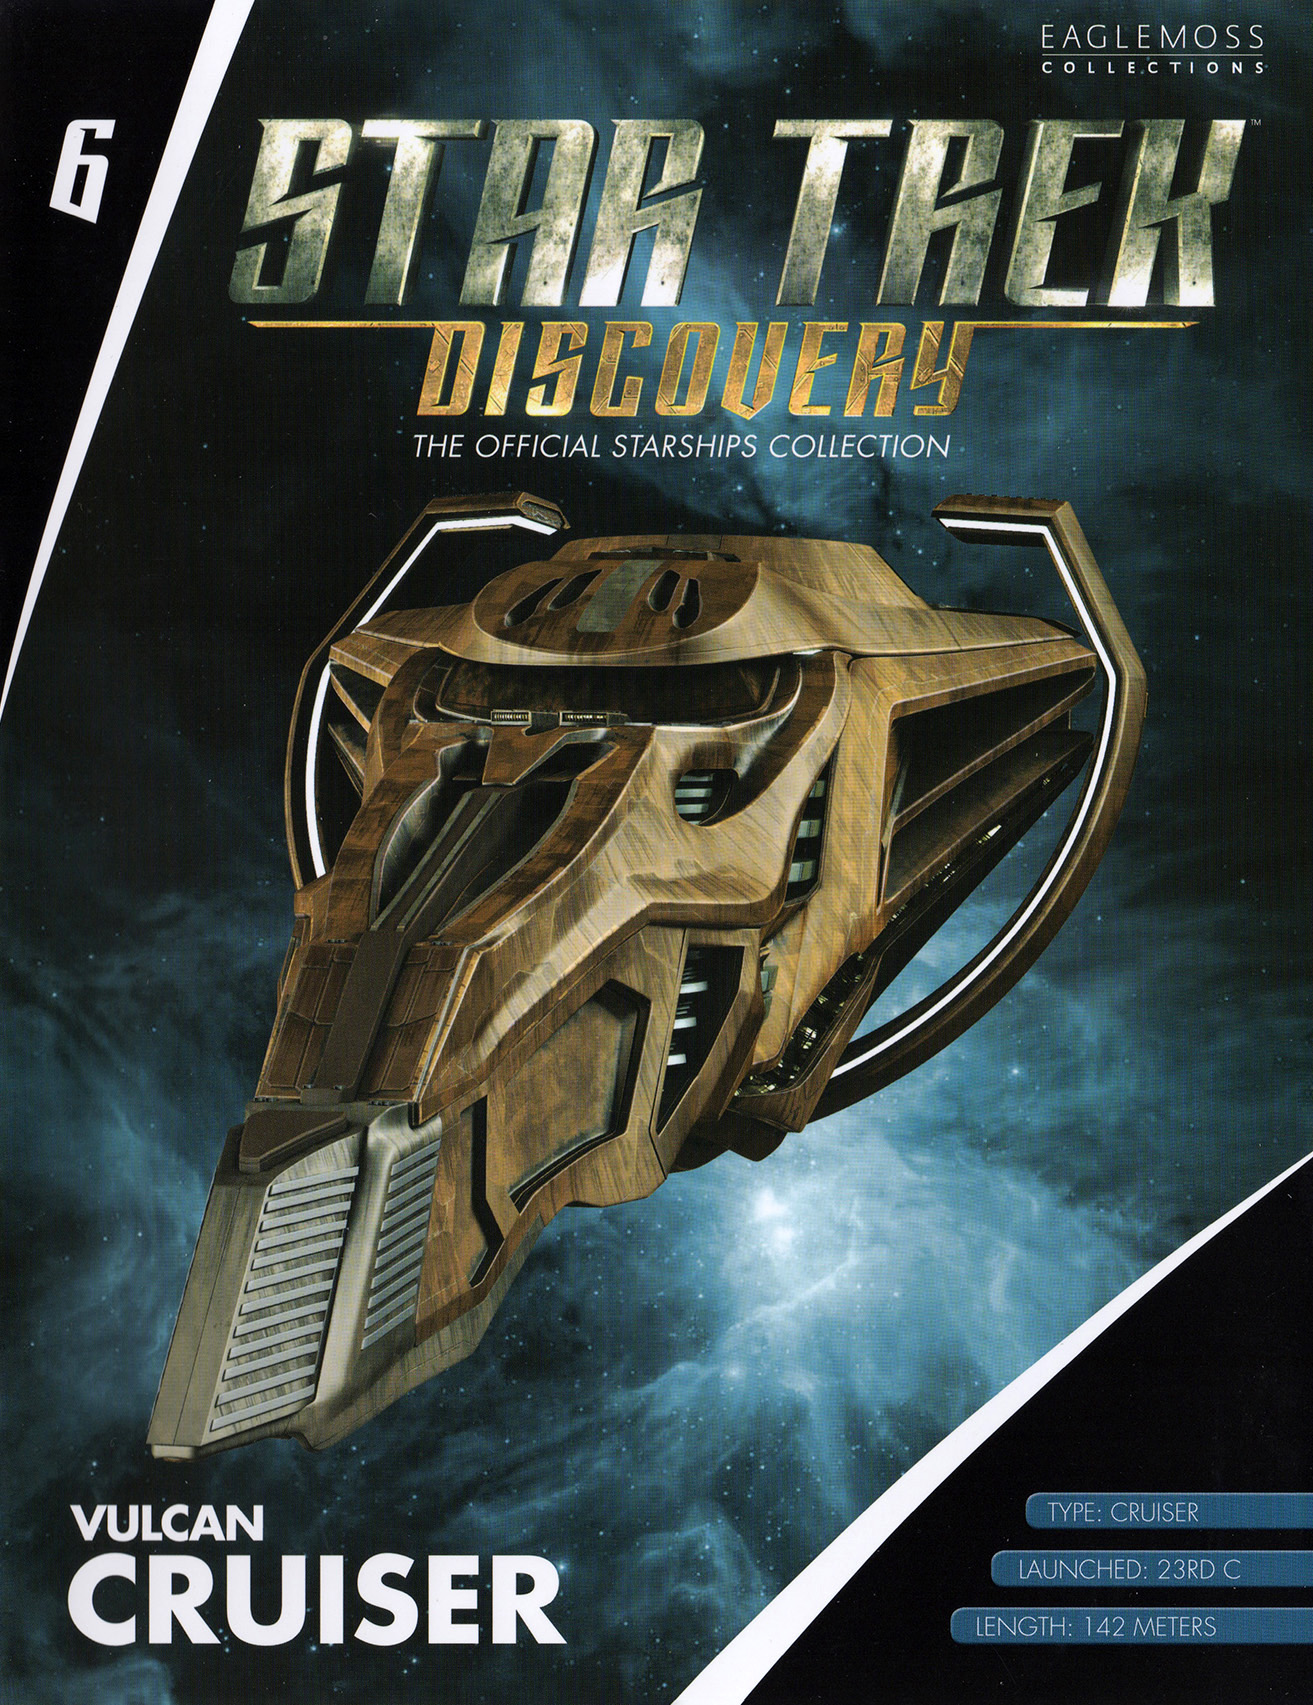 Eaglemoss Star Trek Starships Discovery Issue 6